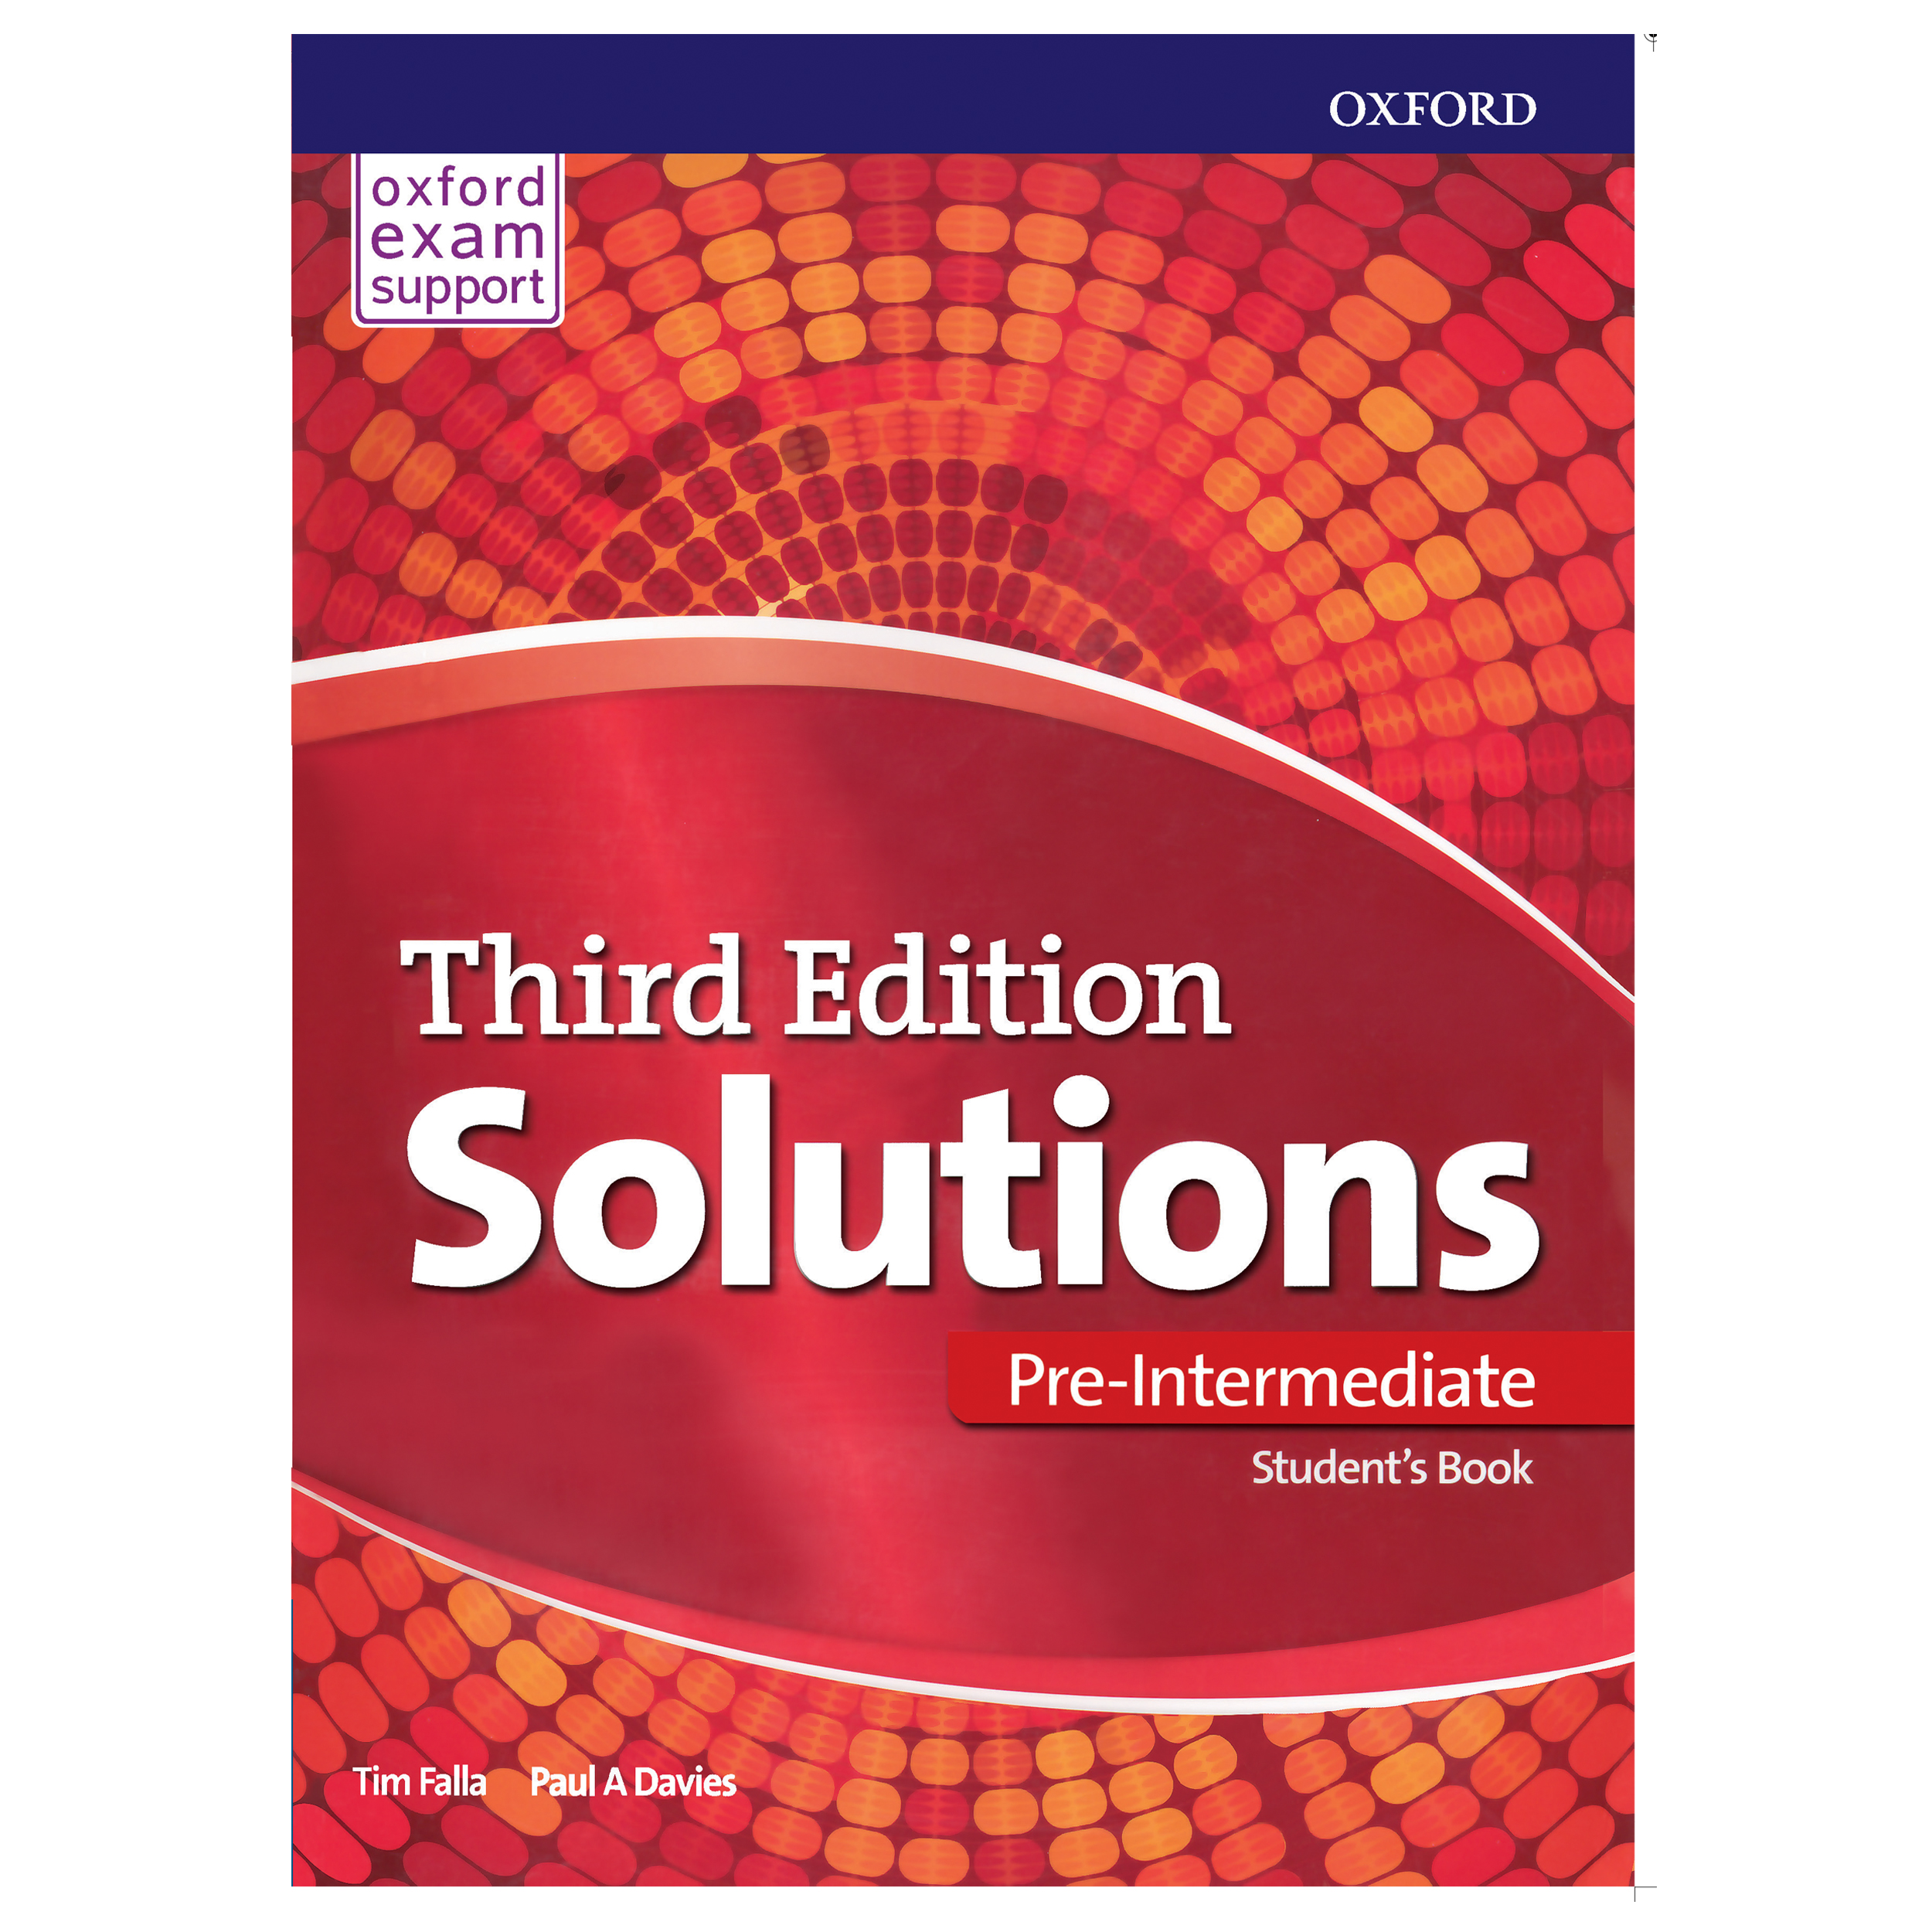 کتاب Solutions Per-Intermediate اثر Tim Falla Paul A.Davies انتشارات هدف نوین